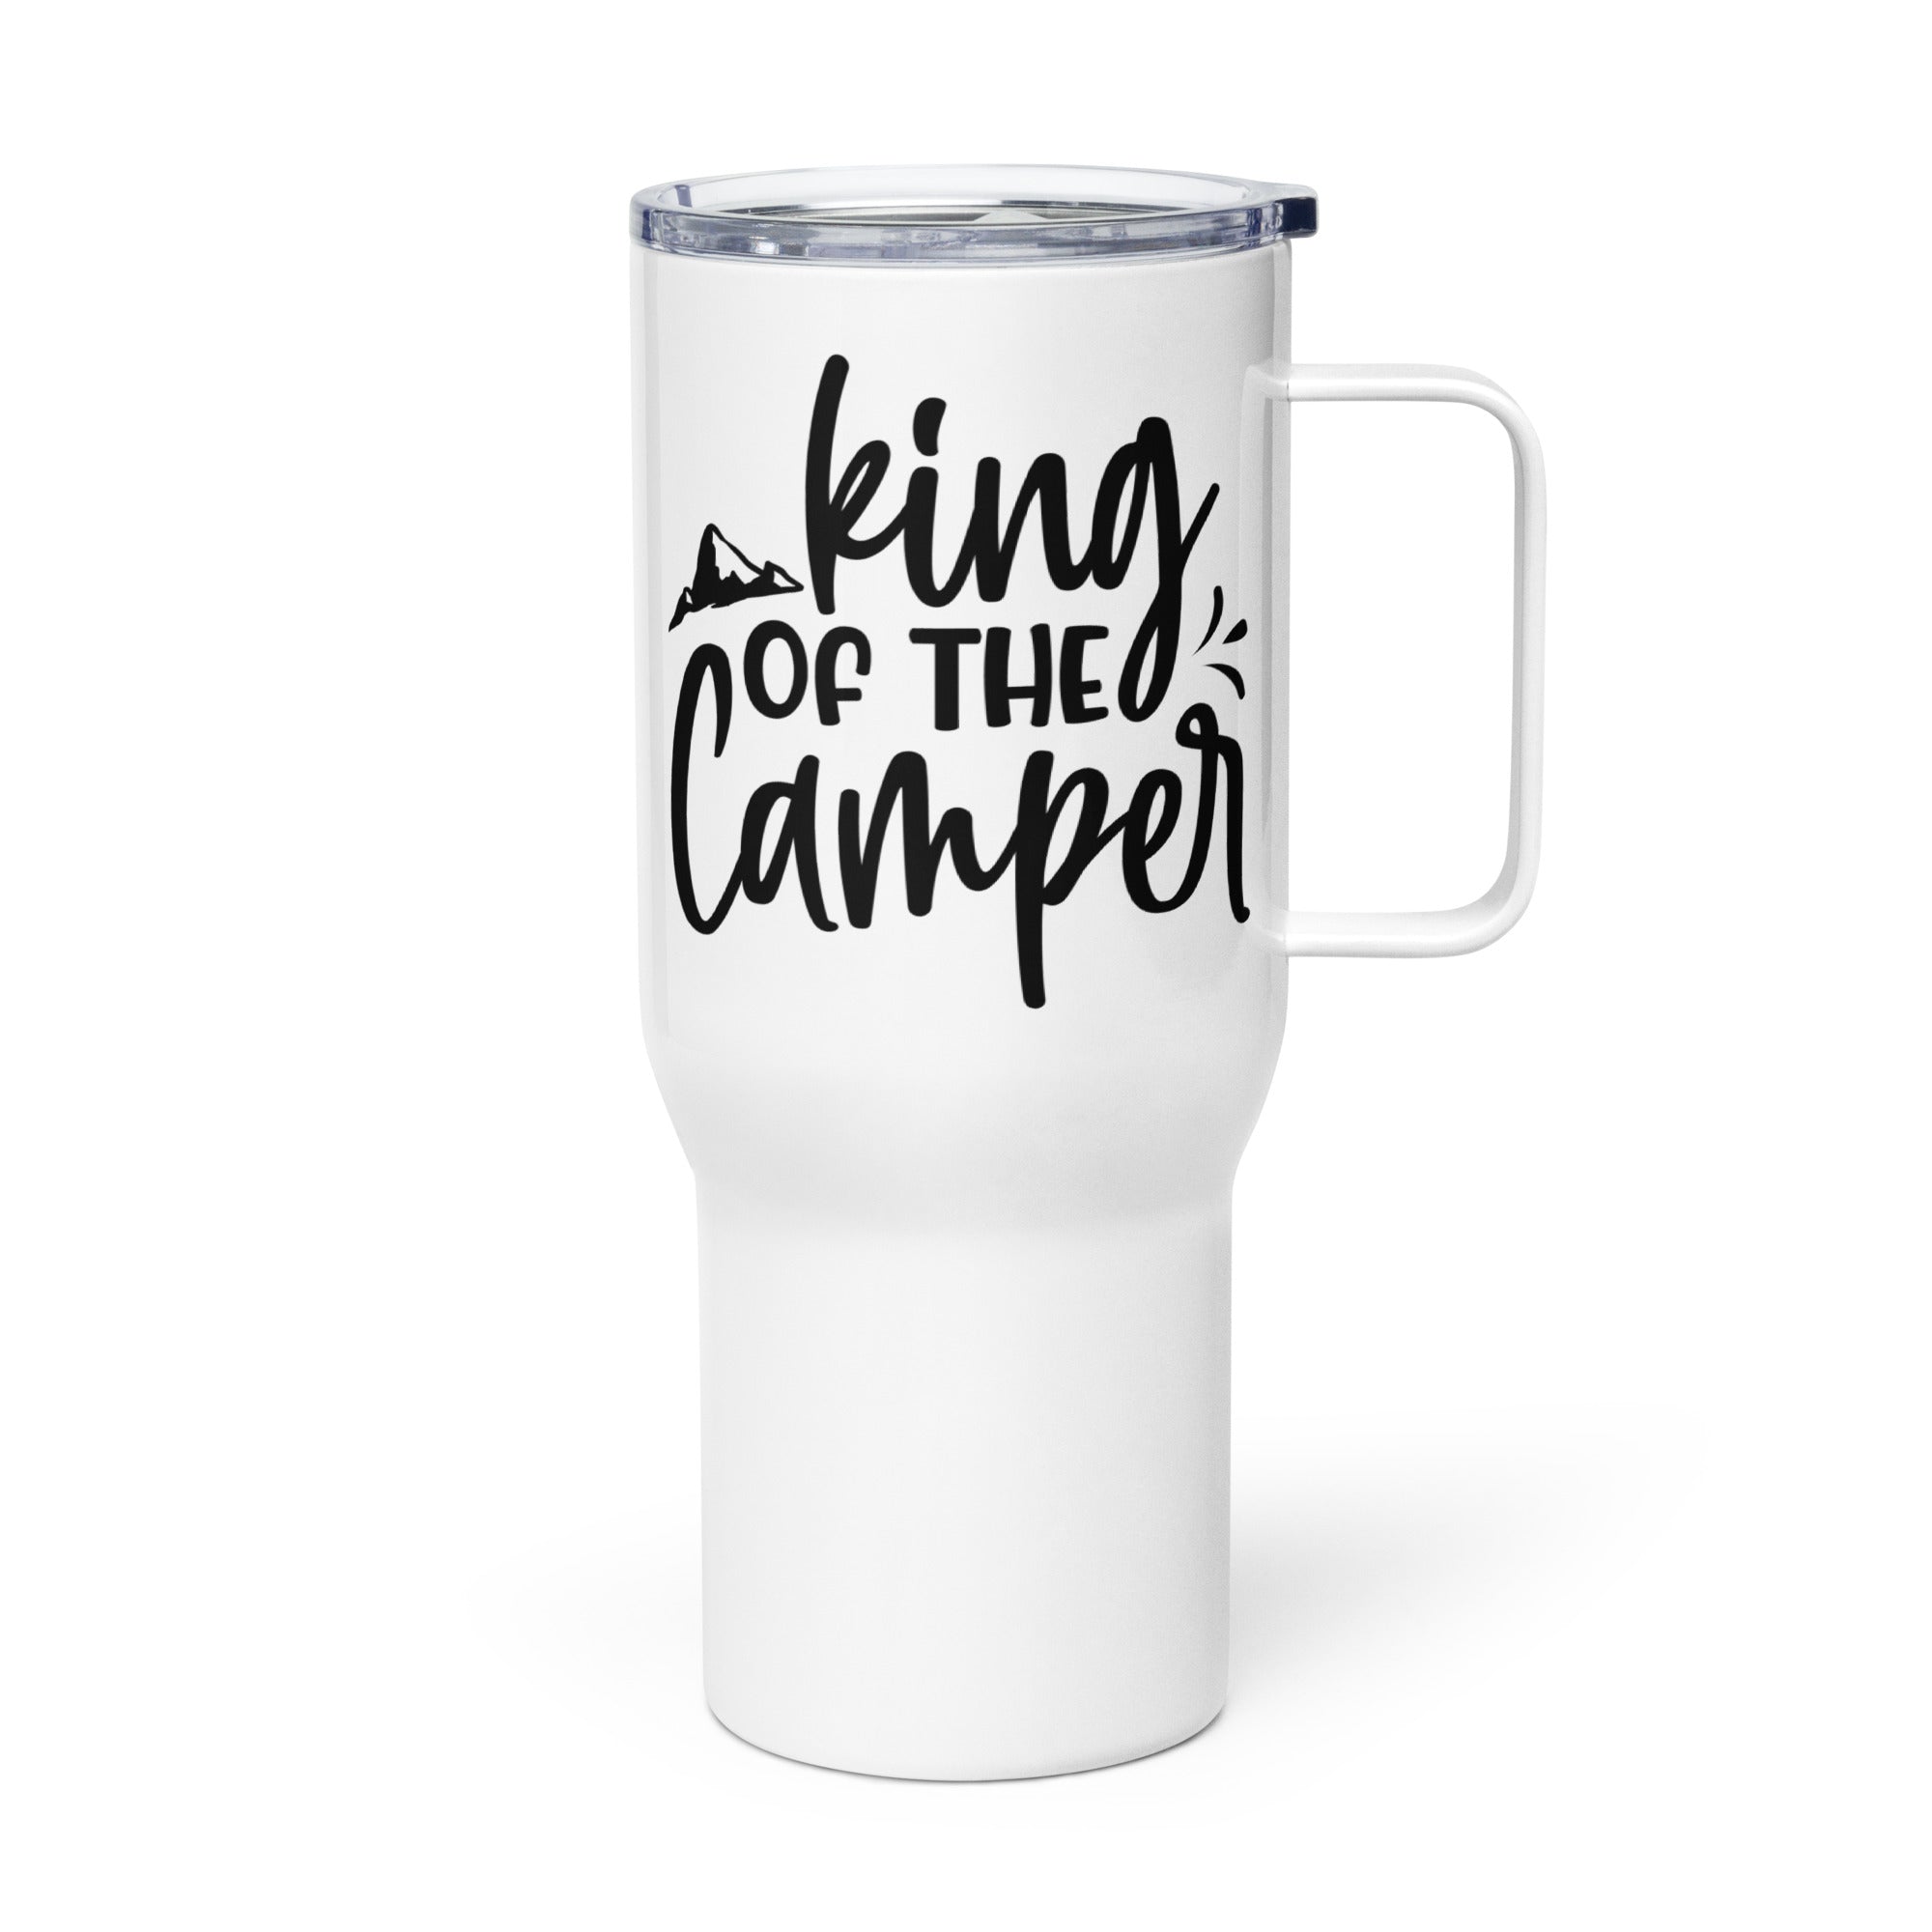 King of the Camper - Travel Mug